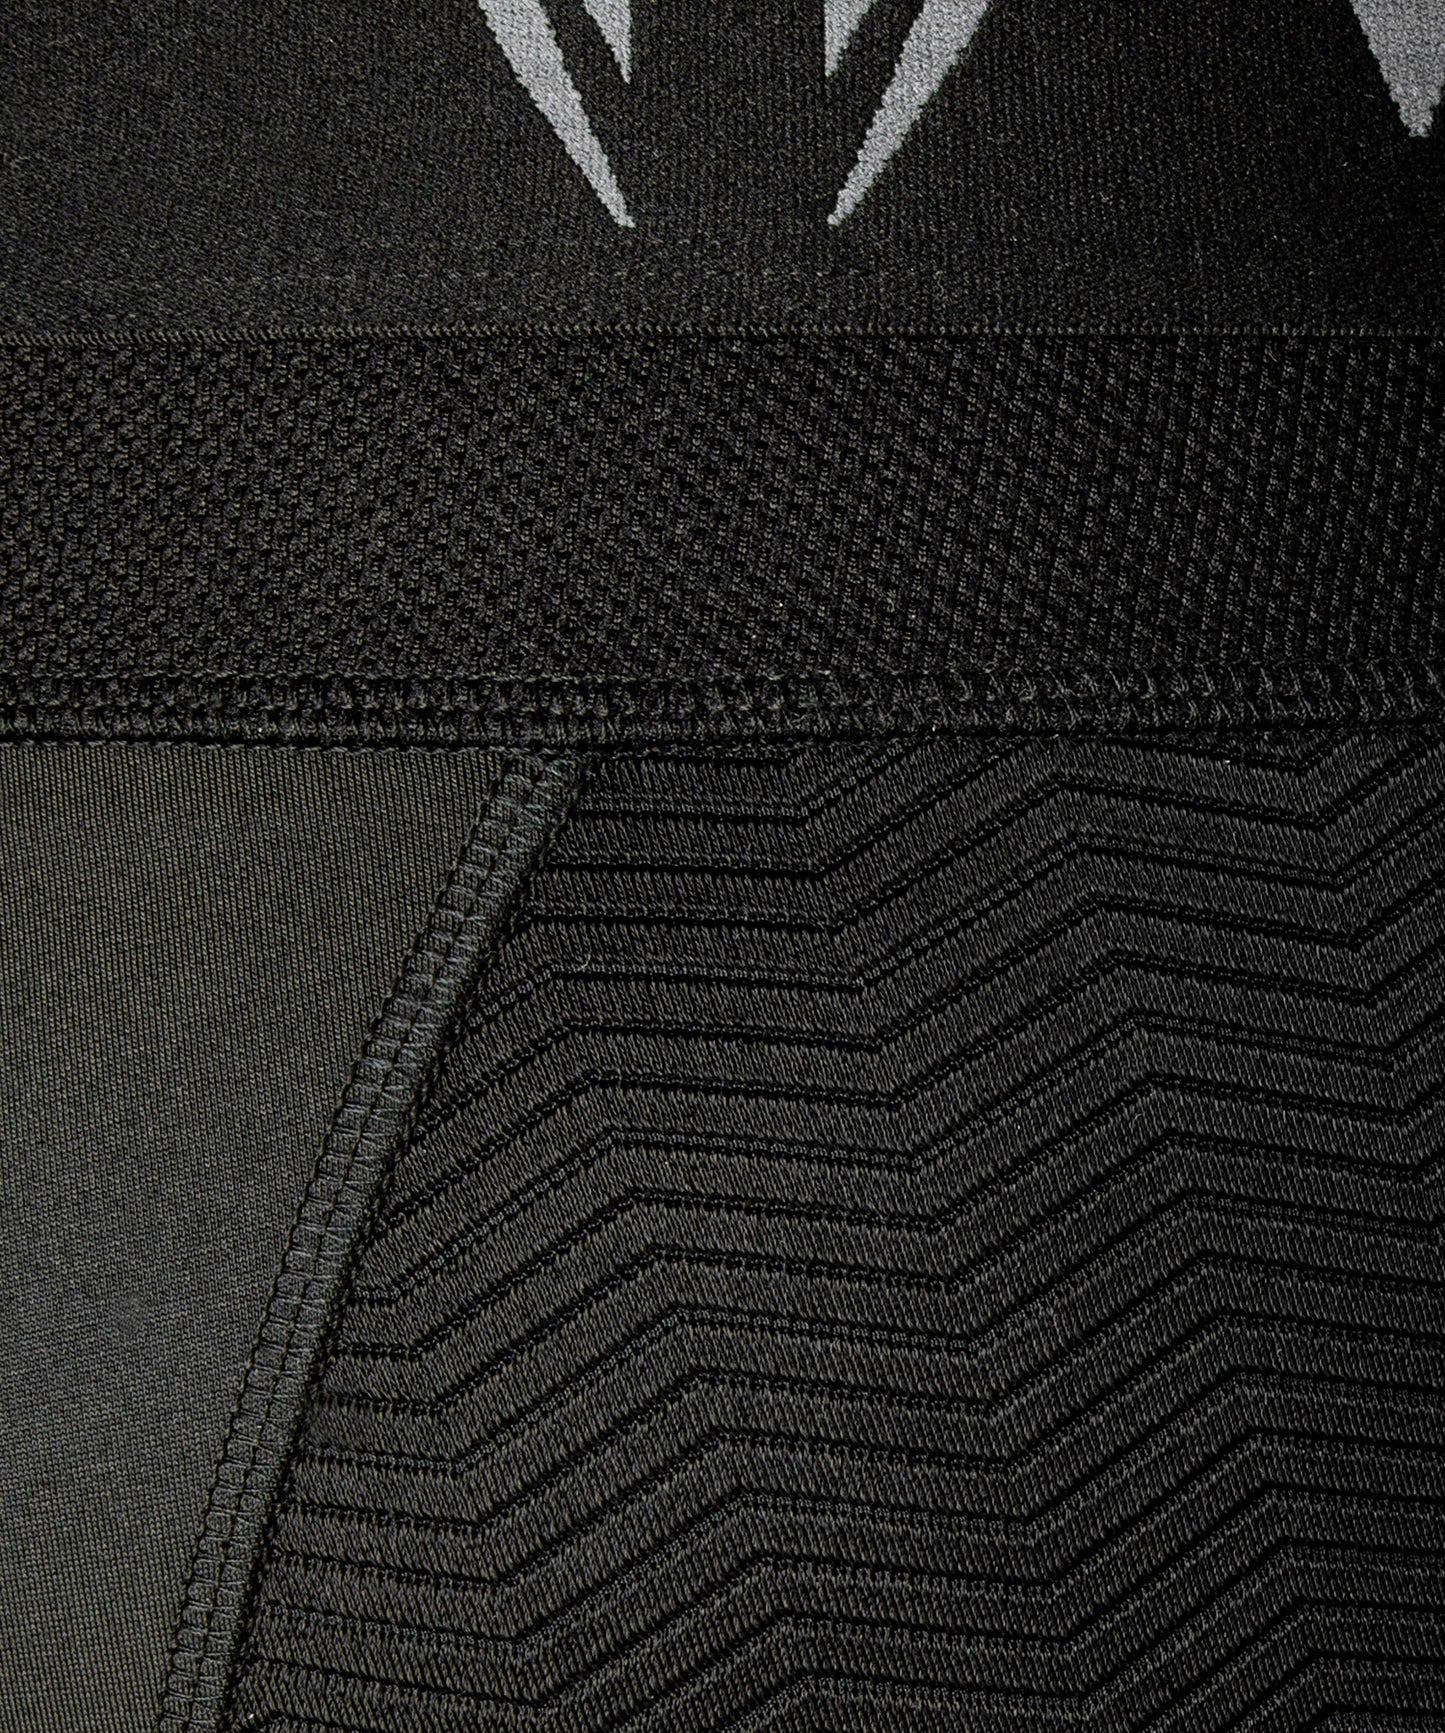 Pantalones de cortos de compresión Venum G-Fit - Negro